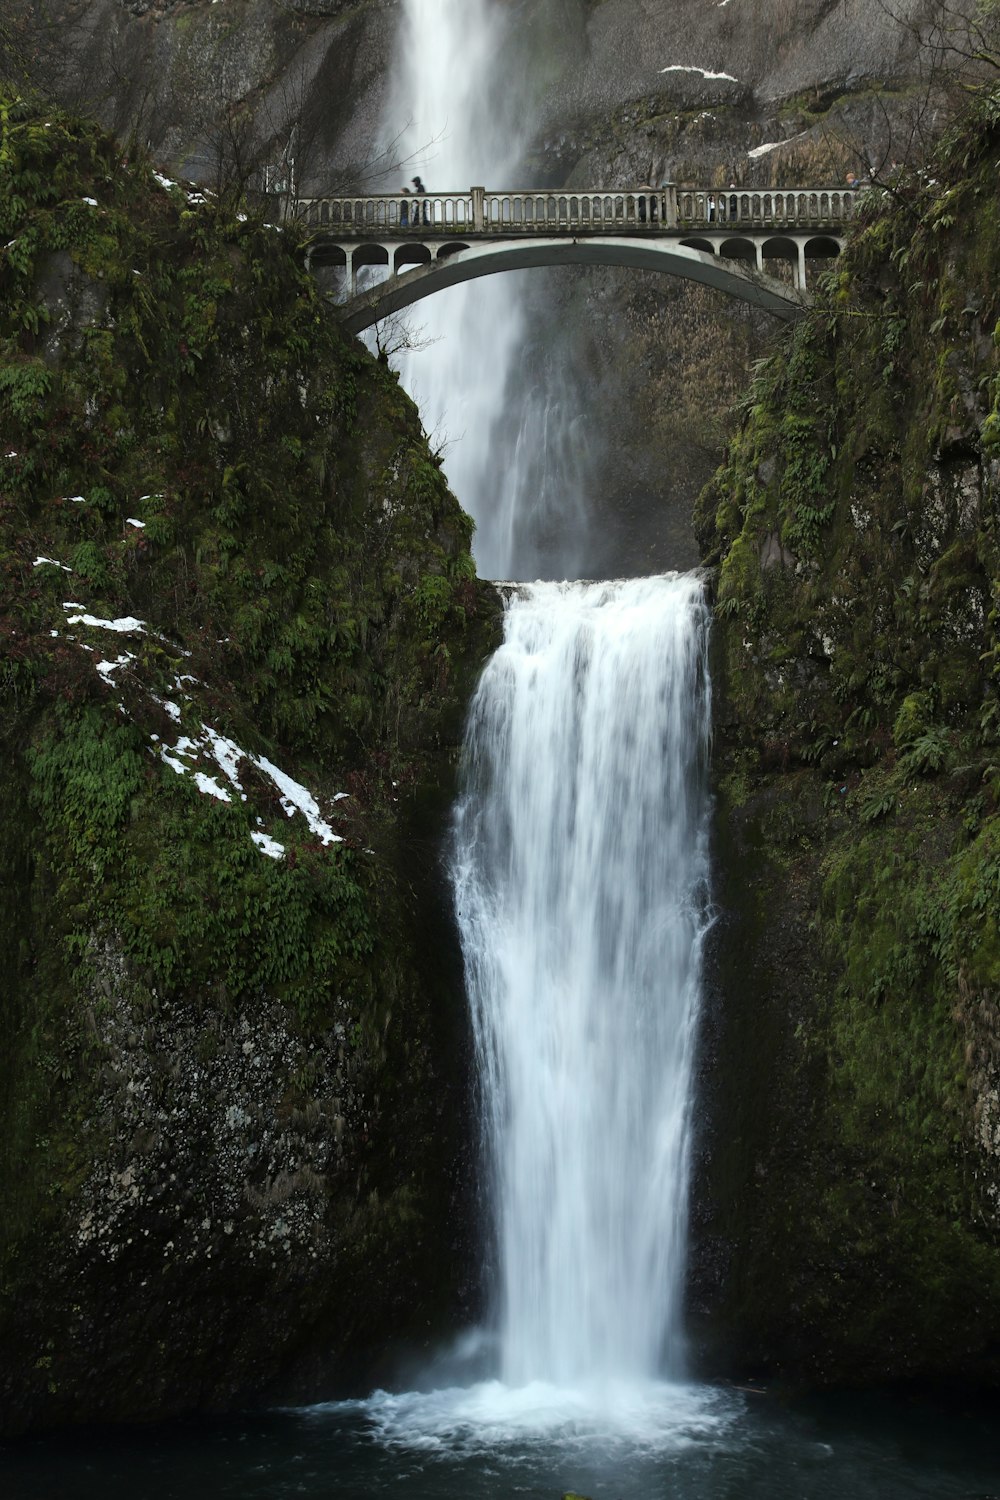 gray bridge over water falls